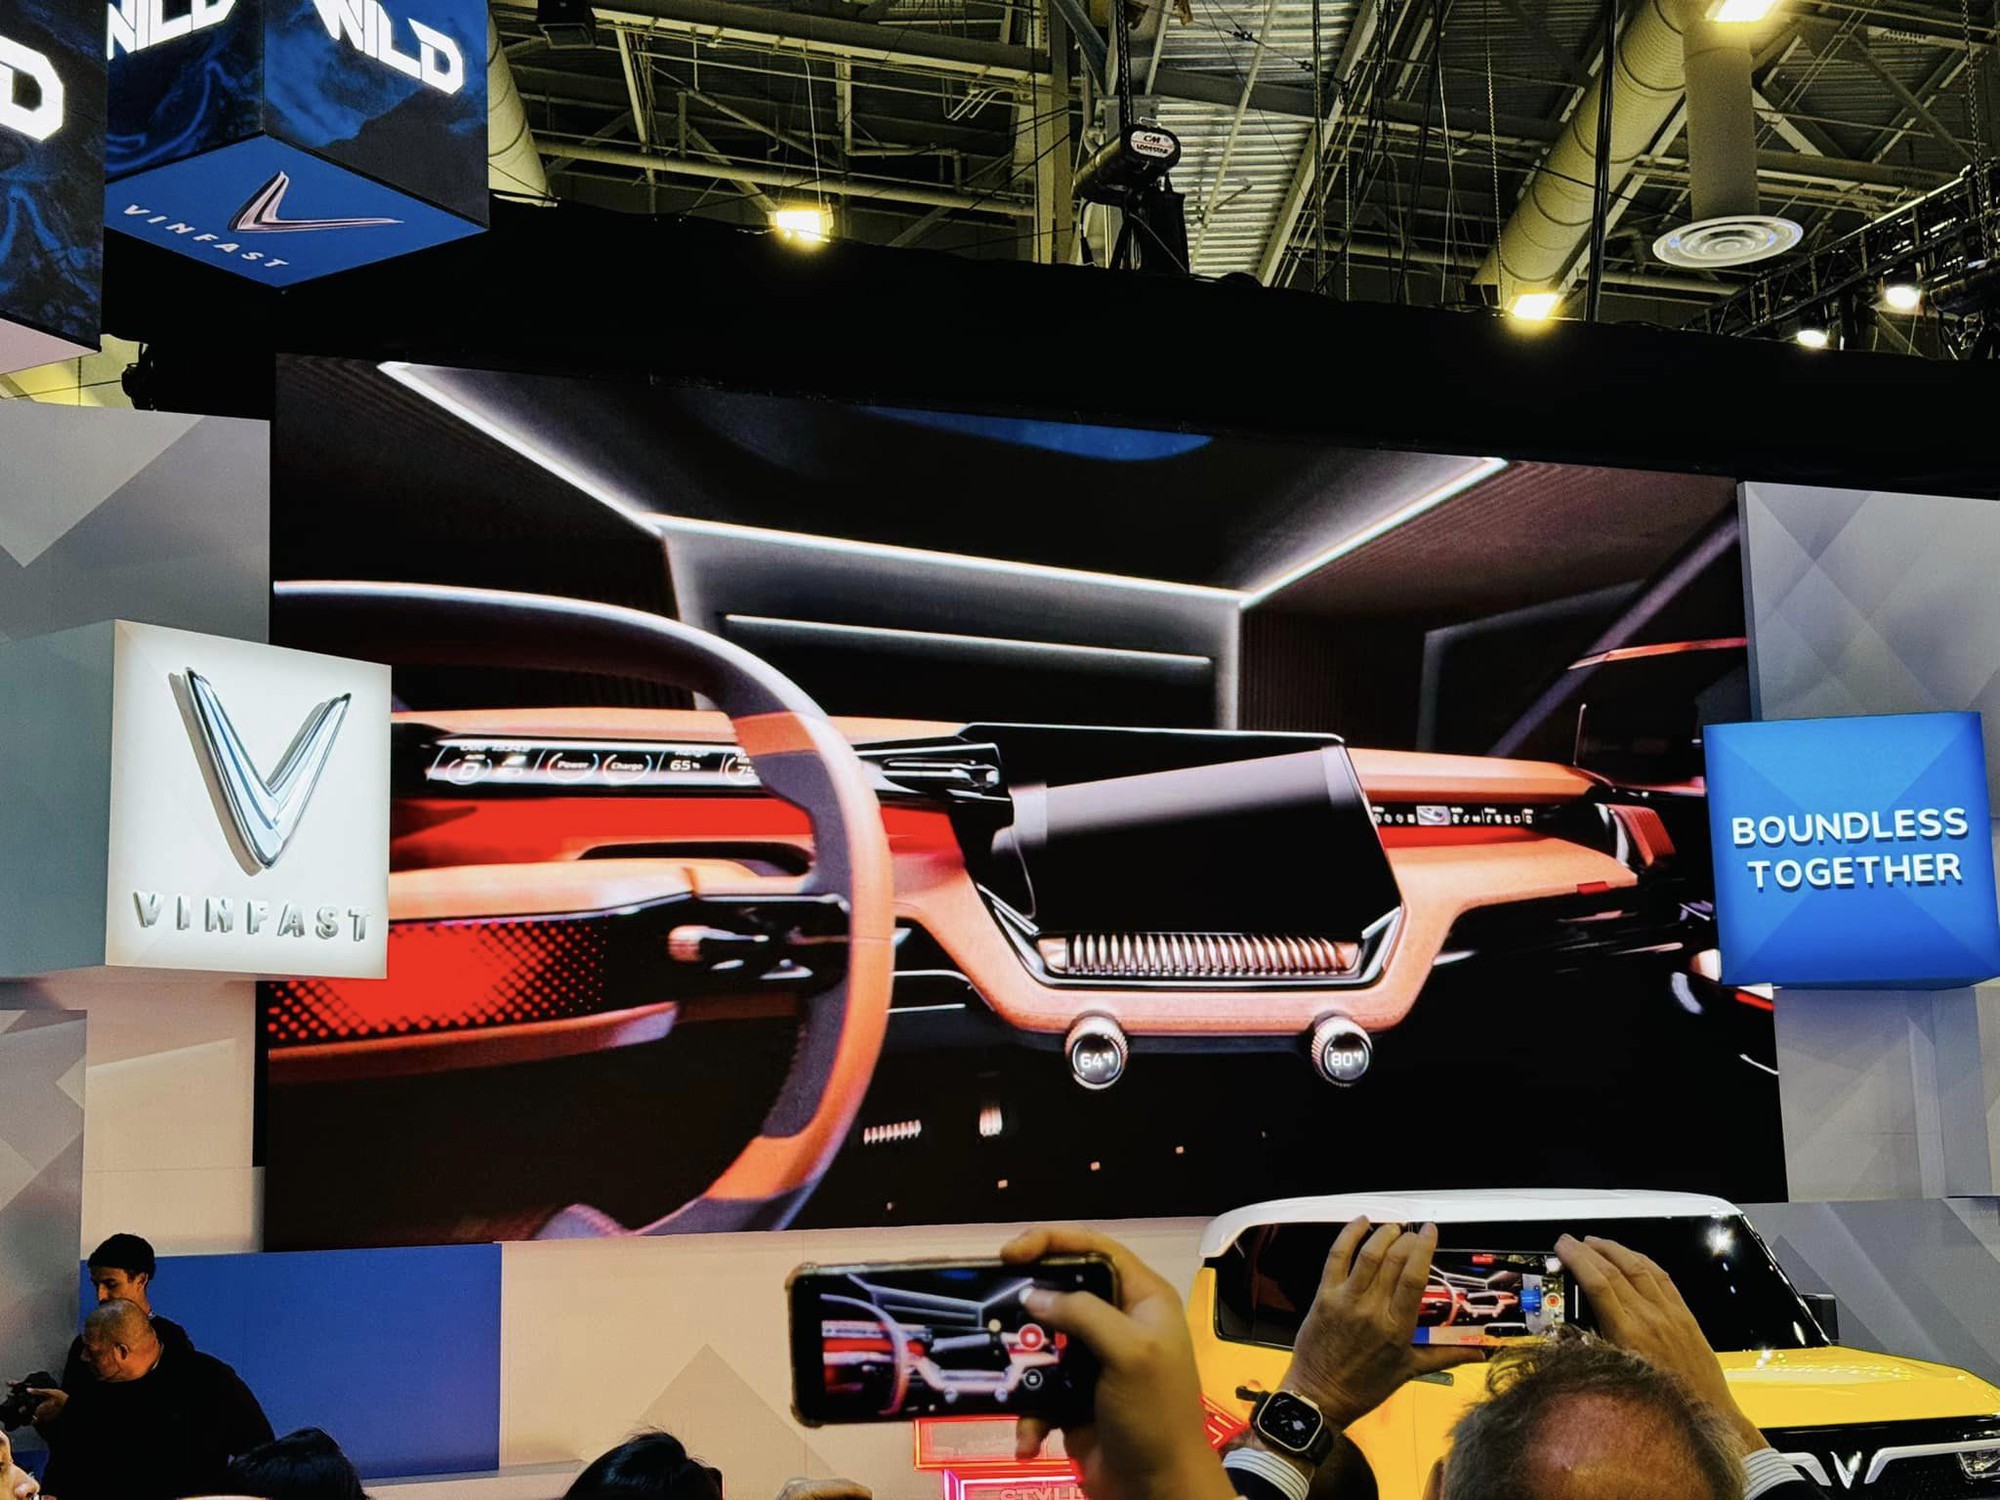 Bán tải VinFast ra mắt với thiết kế như xe viễn tưởng: Cửa mở ngược như Rolls-Royce, trần kính cực lớn- Ảnh 7.